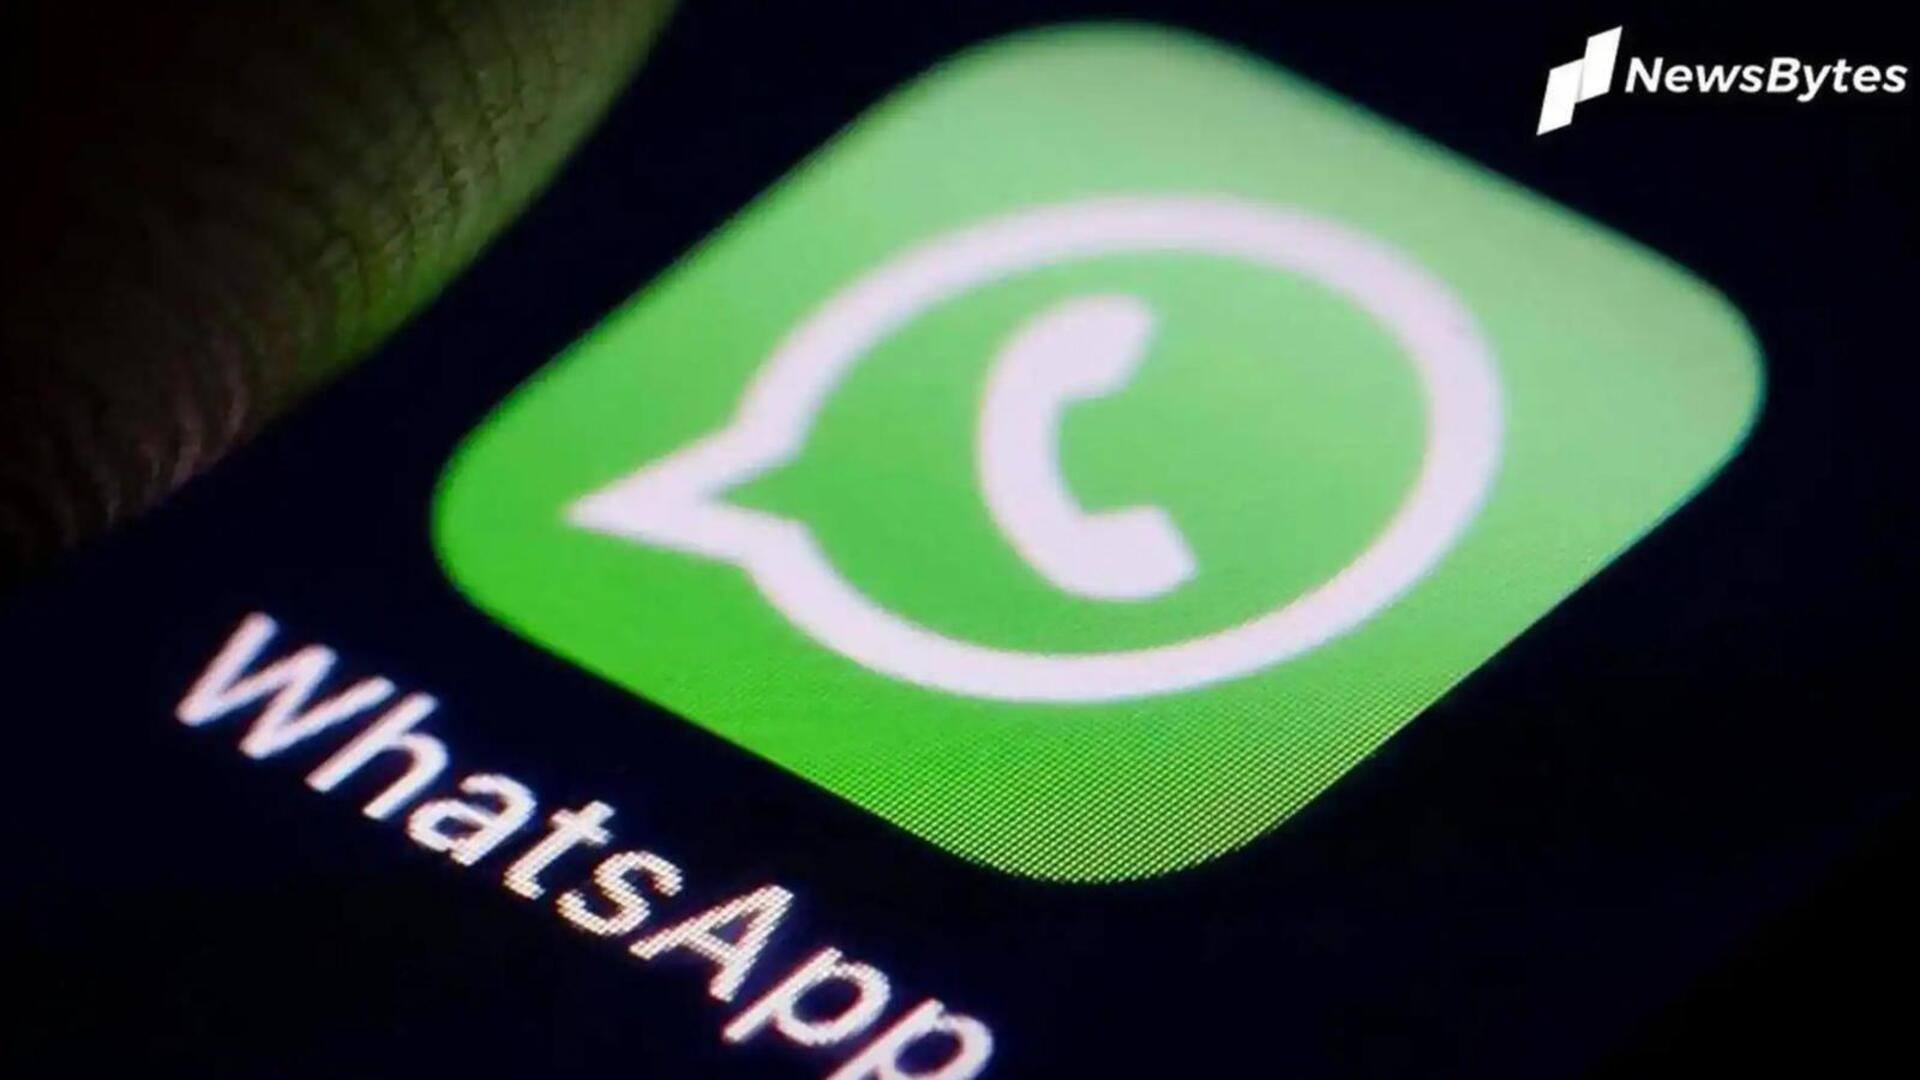 व्हाट्सऐप ने भारत में 71 लाख अकाउंट्स पर लगाया प्रतिबंध, जानें वजह